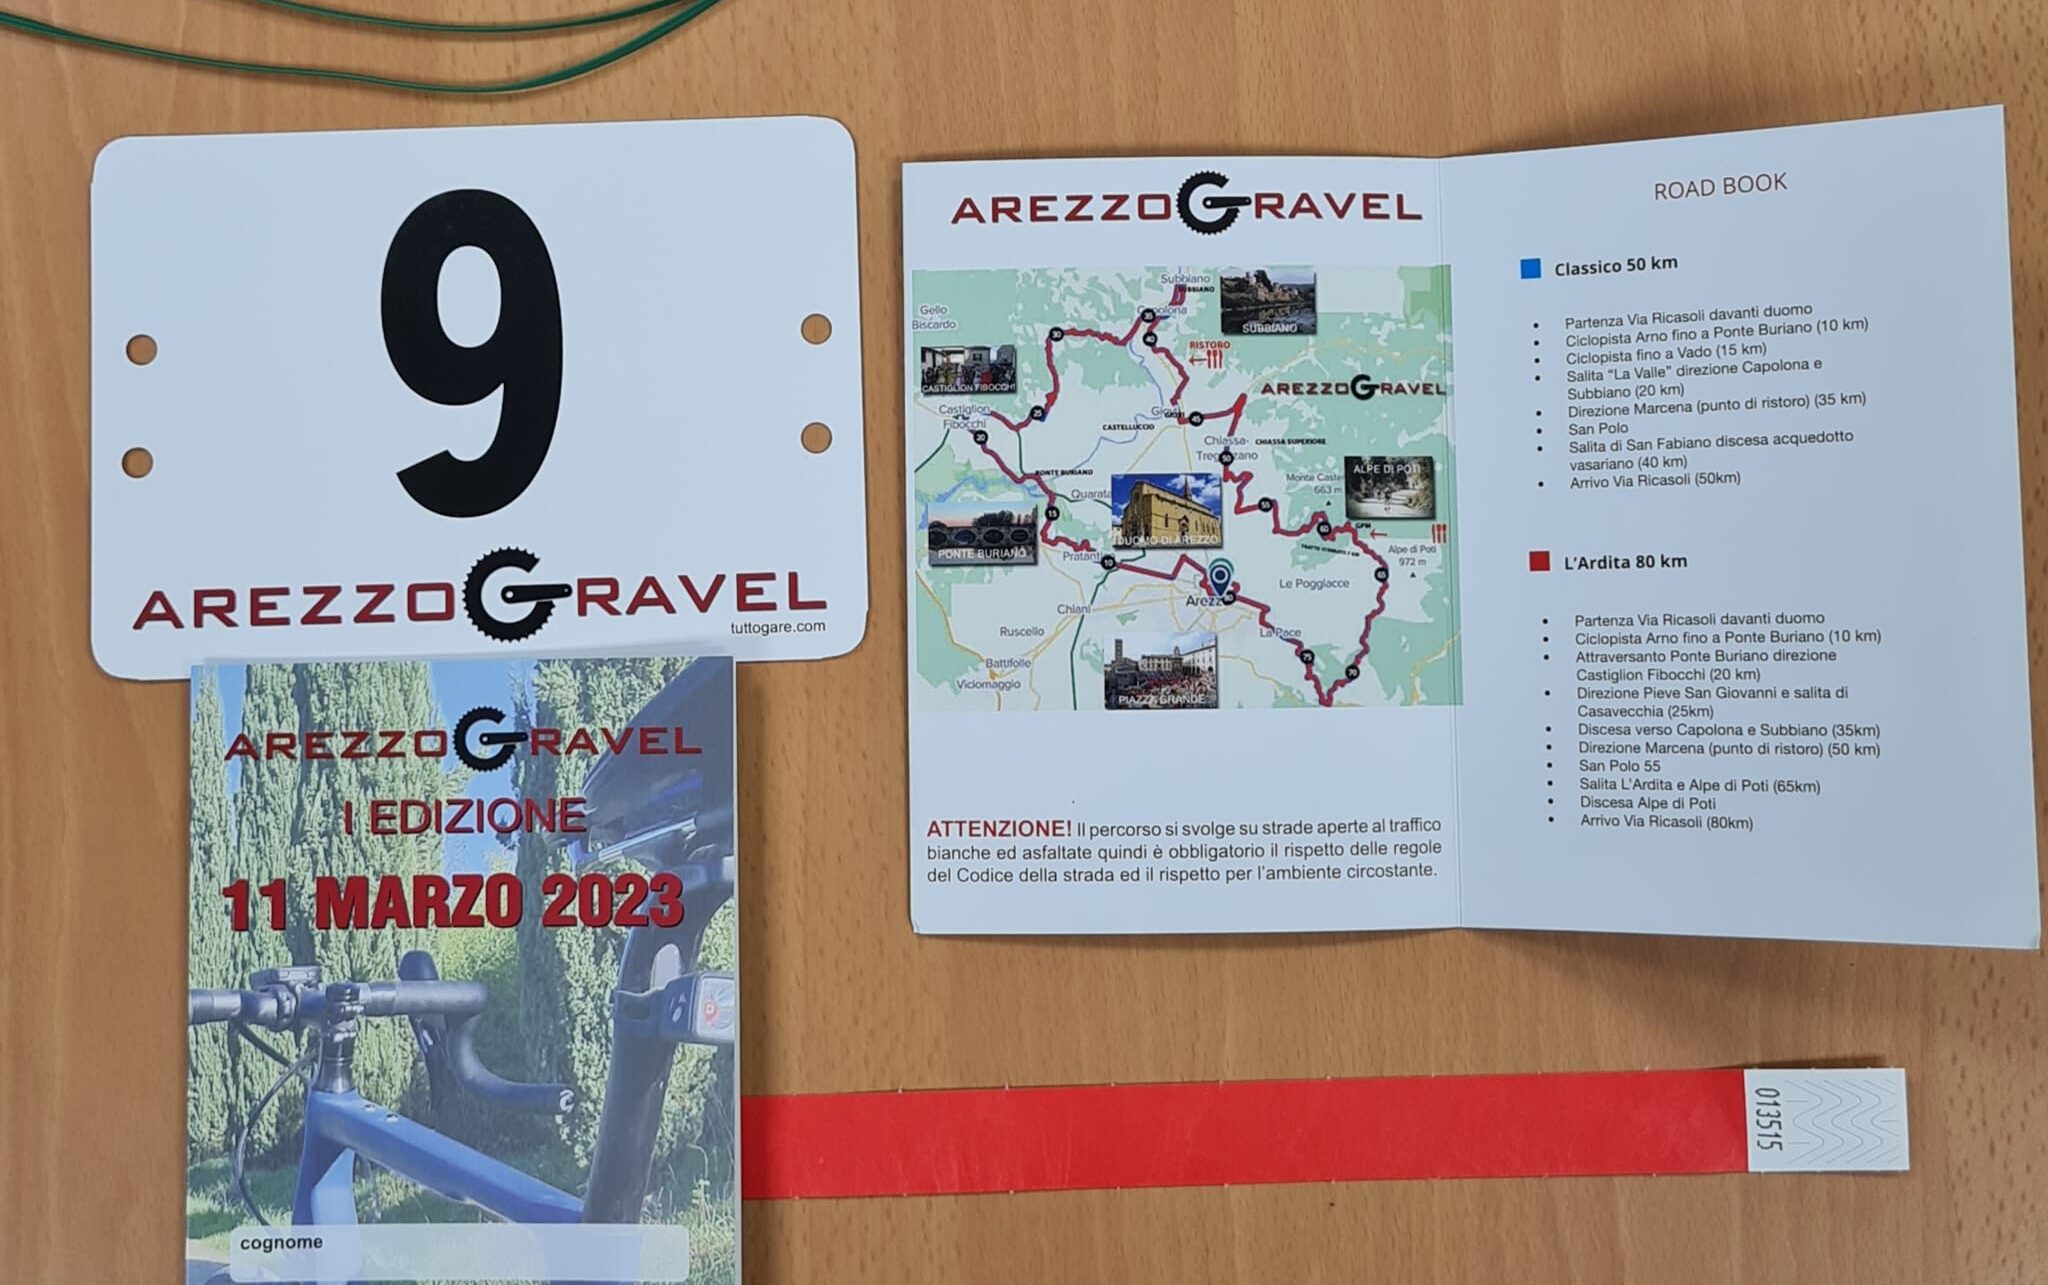 Arezzo Gravel e Ardita: come cambiano circolazione e sosta